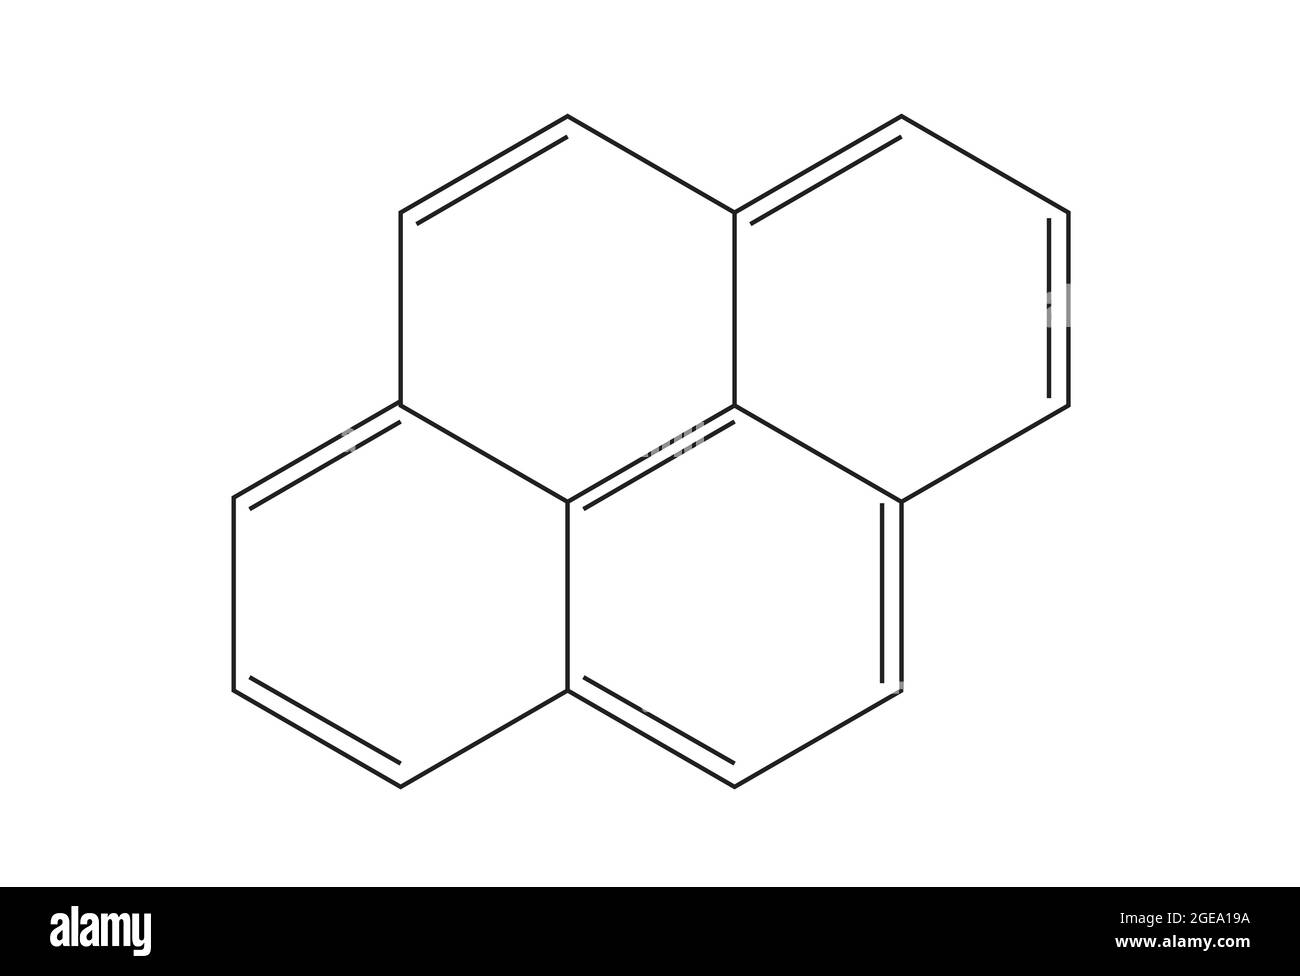 Chemische Struktur von Pyrene, Anatomie von Pyrene, Molekulare Struktur von Pyrene, Chemische Formel von Pyrene, Pyrene, vier aromatische Ringe, Kohlenwasserstoffe Stock Vektor